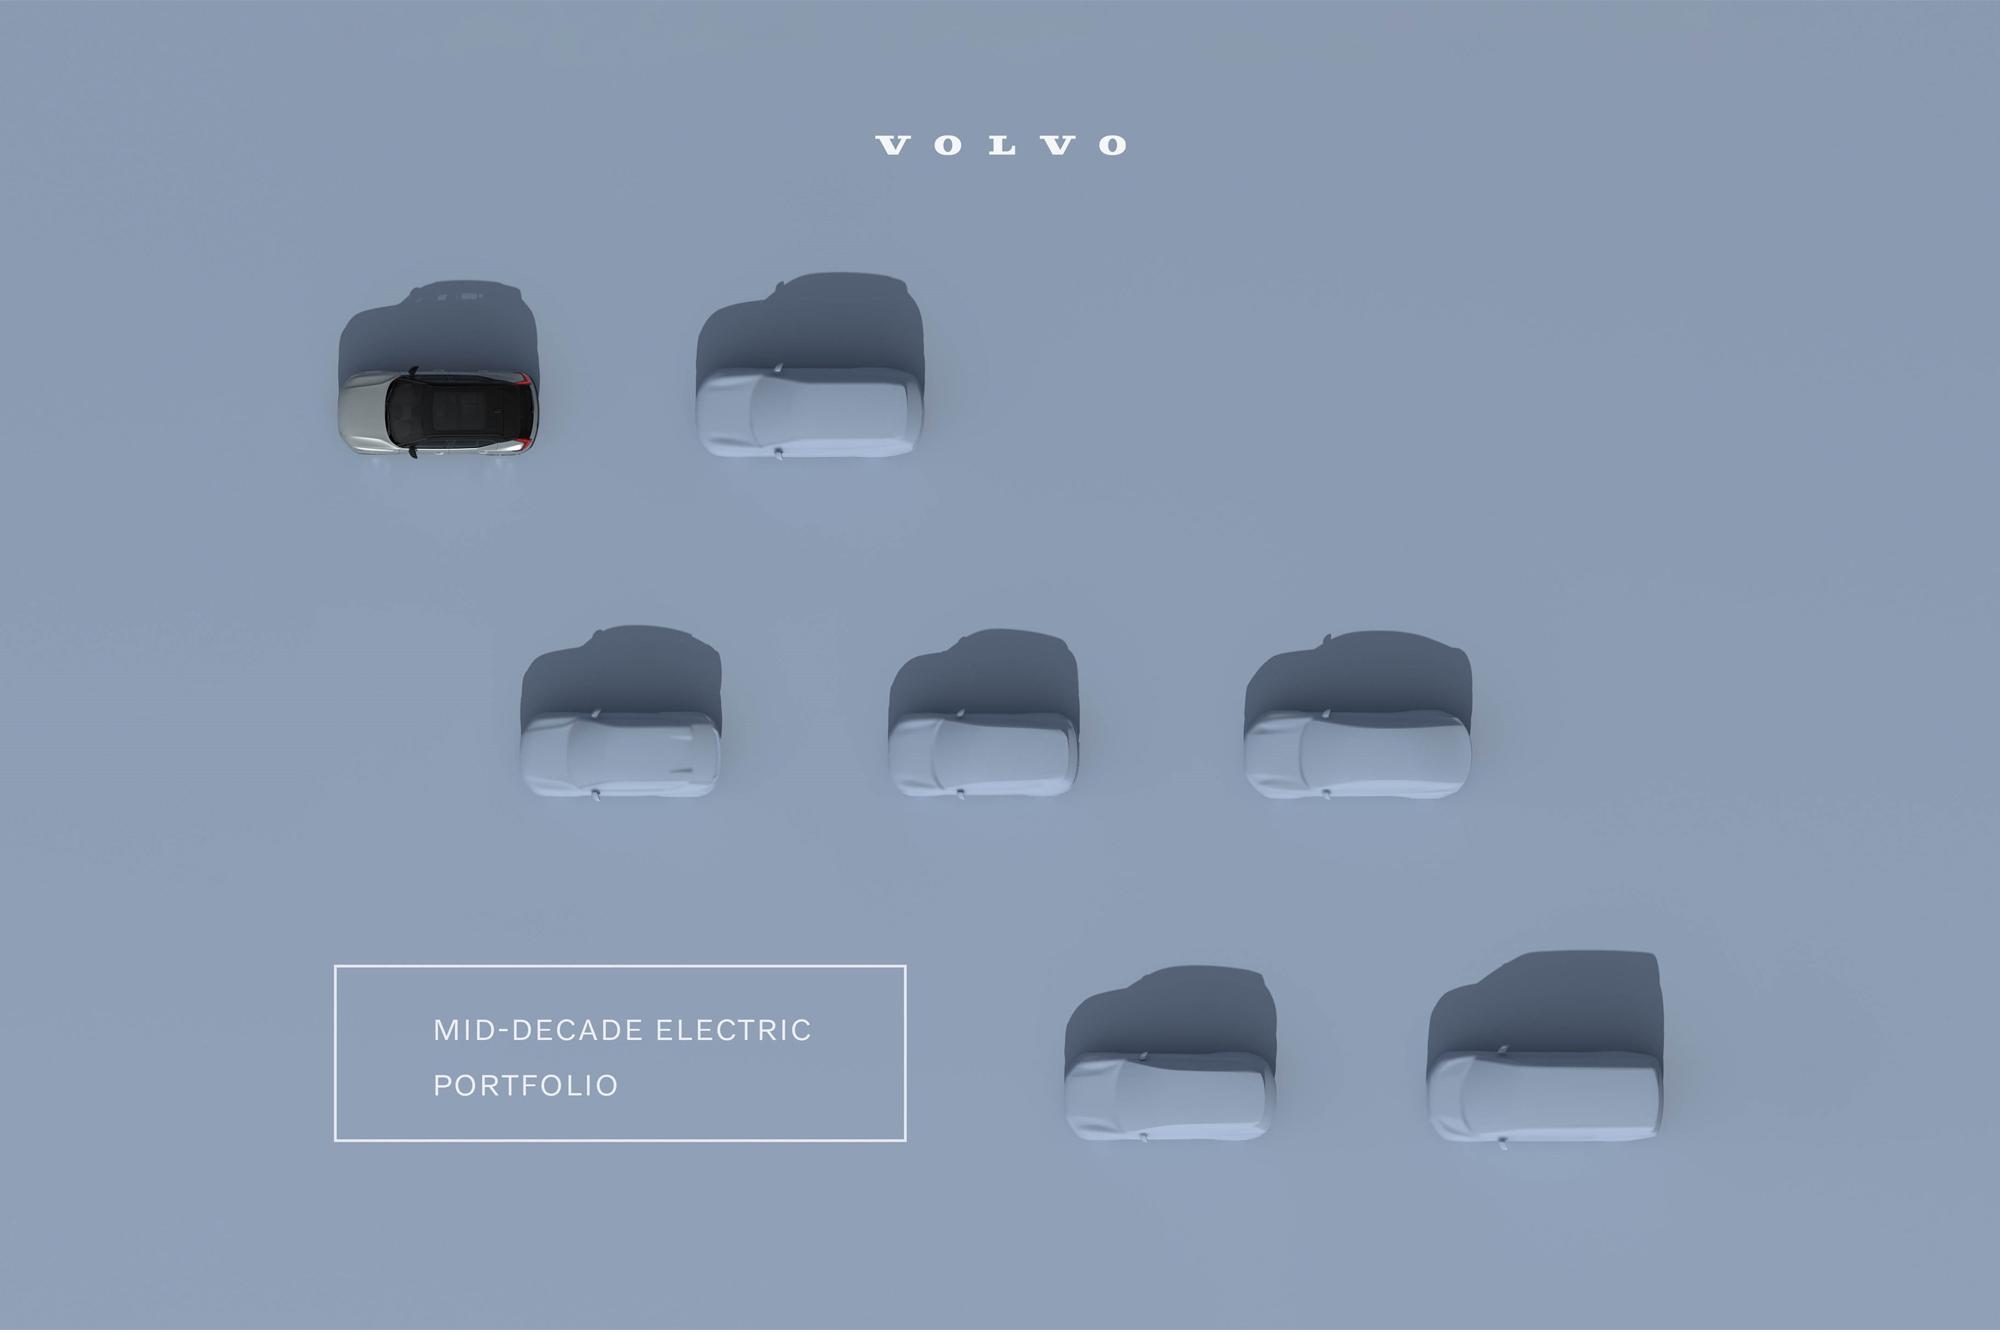 Μόνο ηλεκτρικά τα Volvo έως το 2030